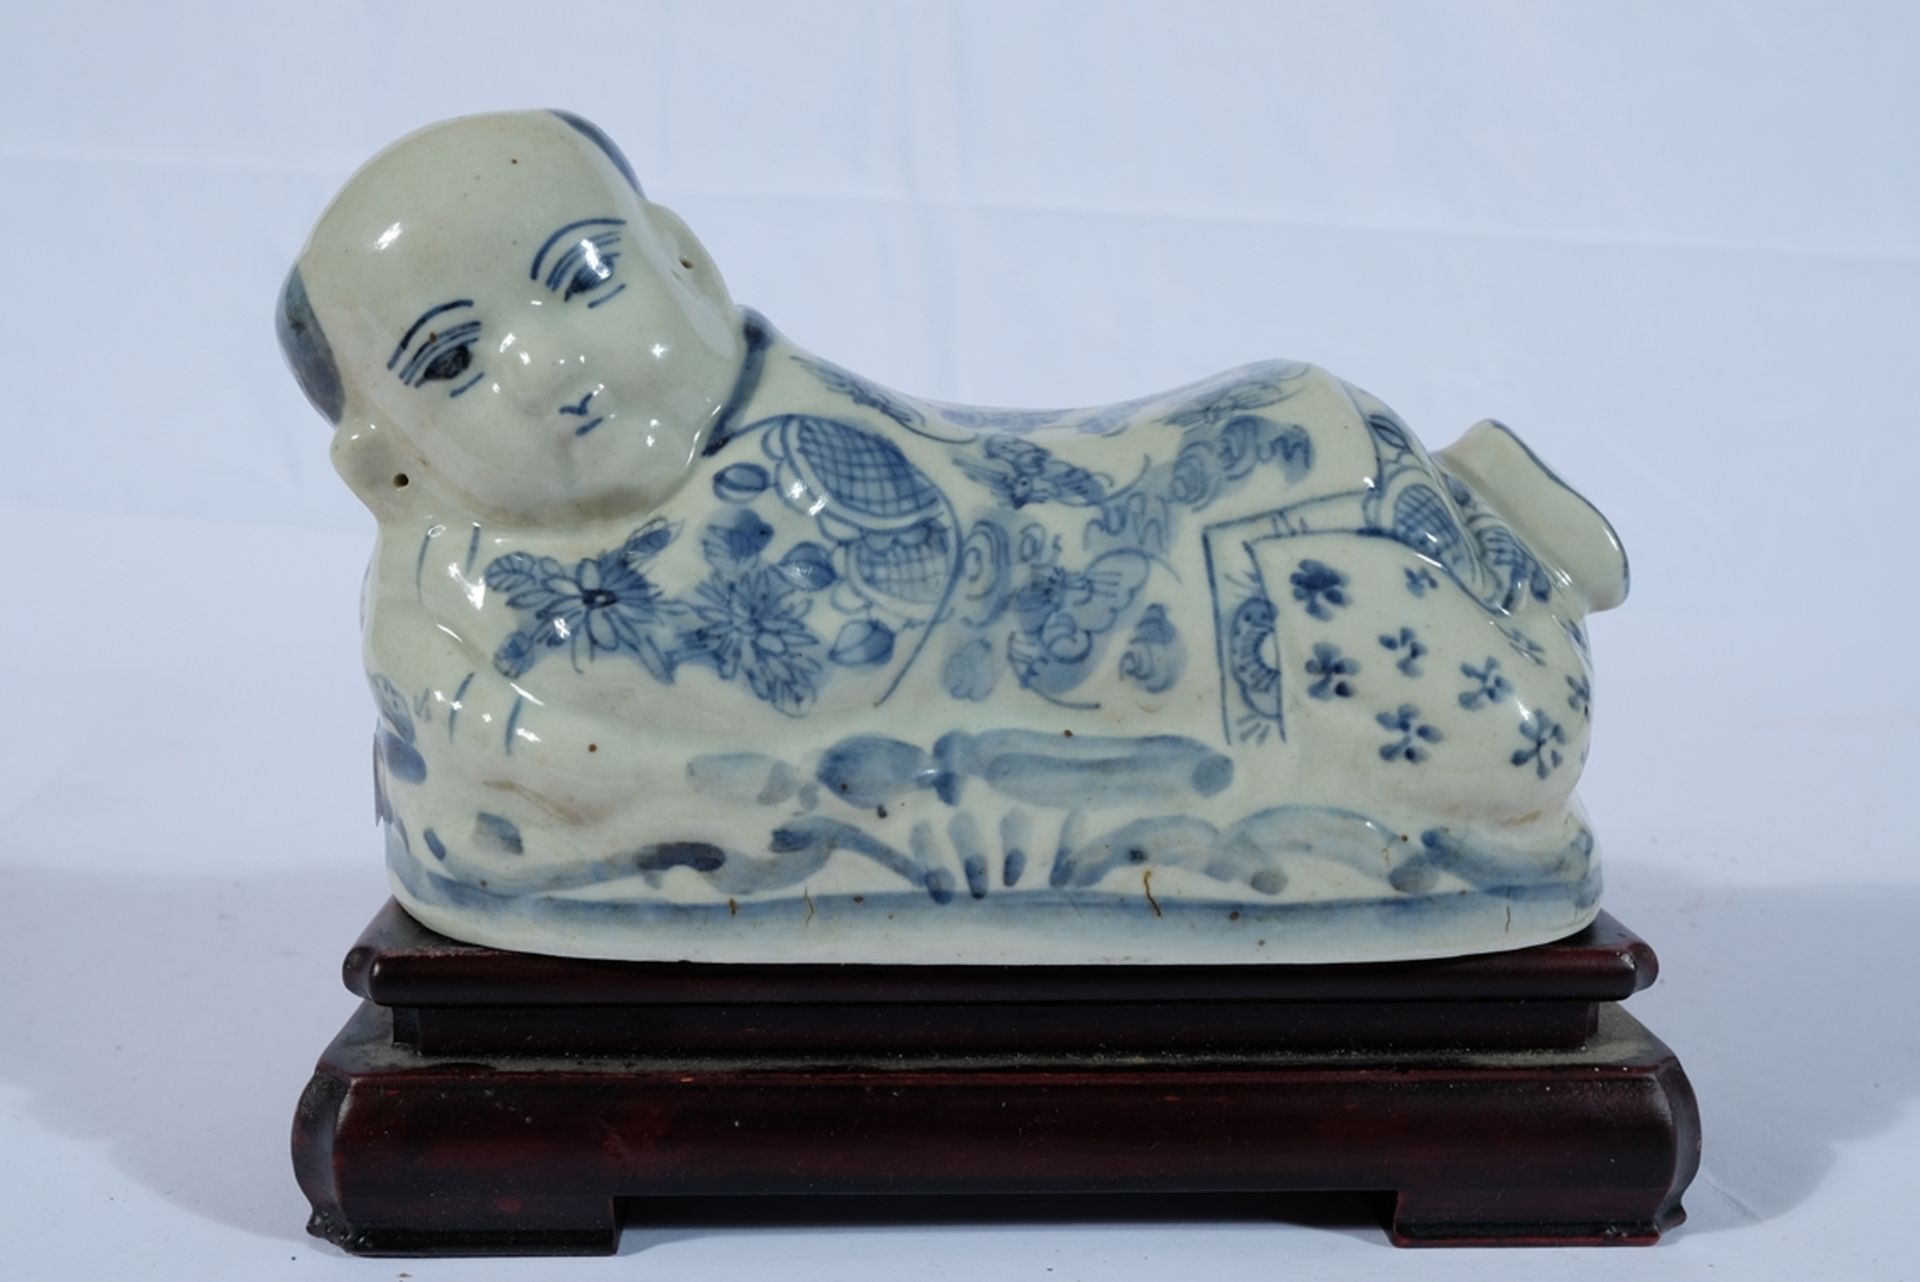 Chinesisches "Opium-Kissen", Nackenstütze aus Porzellan. Die Figurine weist auf der Bodenseite eine